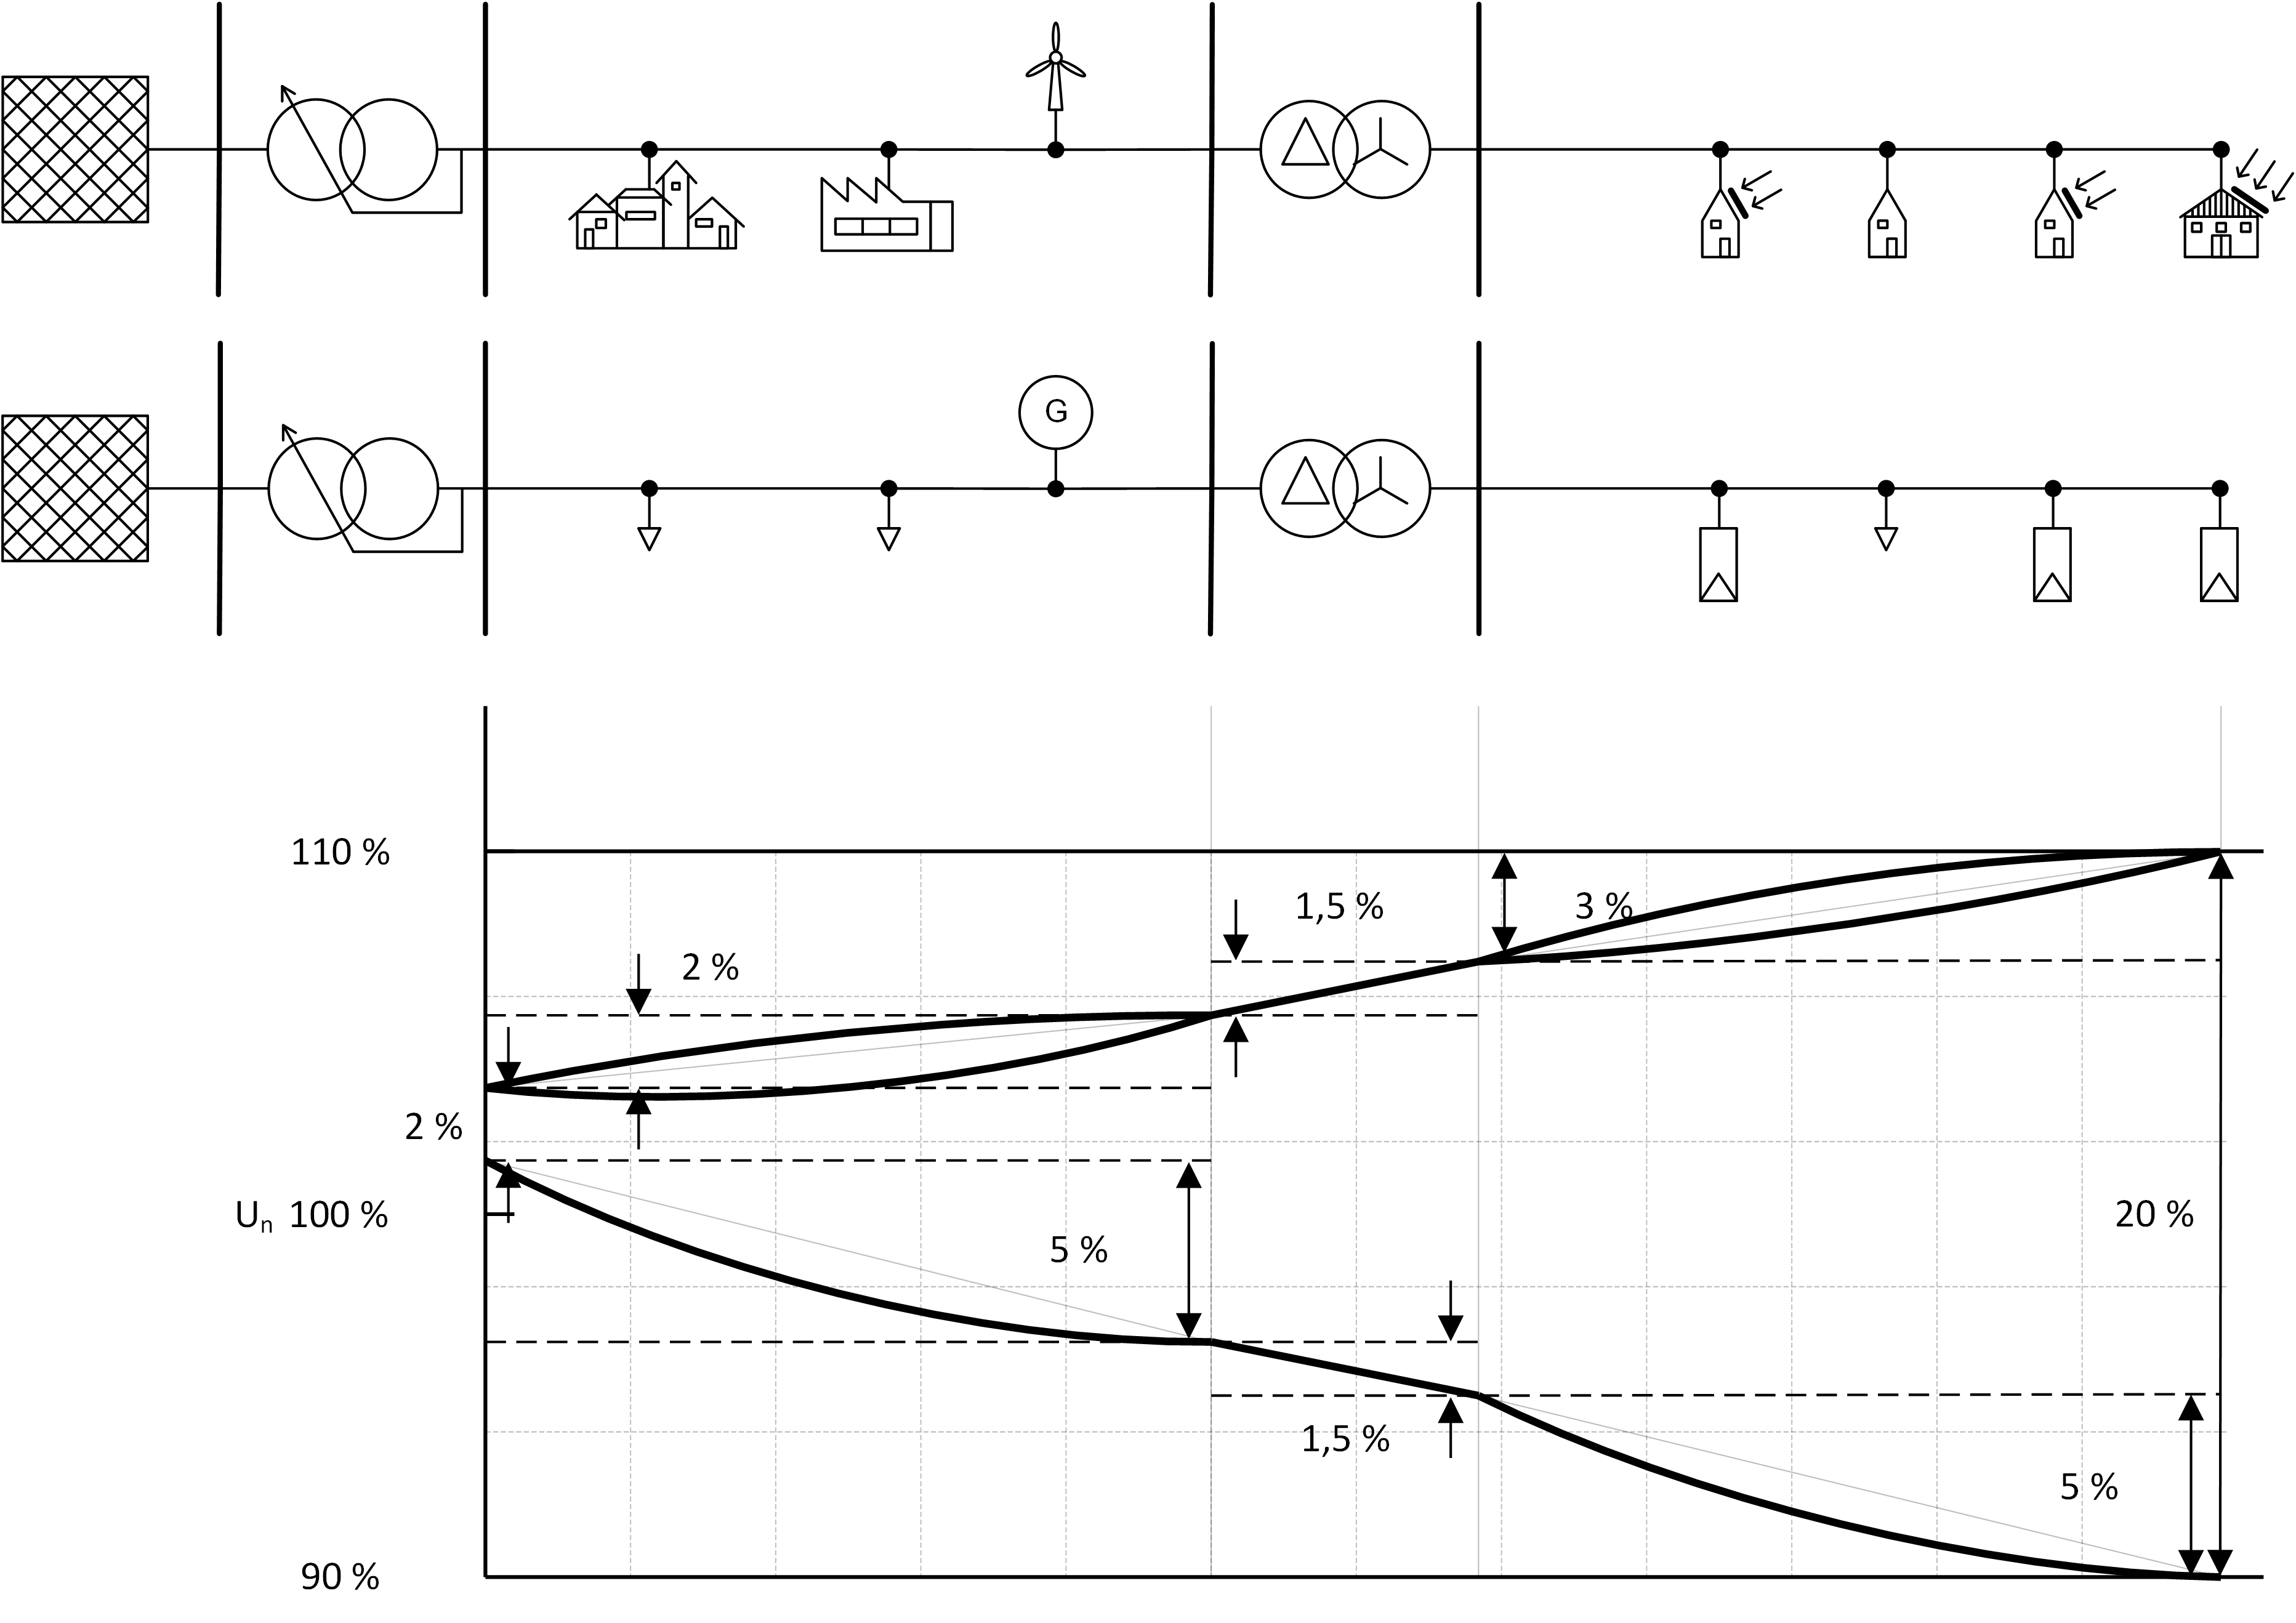 Abbildung 2: Beispielhafte Aufteilung des Spannungsbandes innerhalb des Verteilungsnetzes ohne regelbaren Ortsnetztransformator